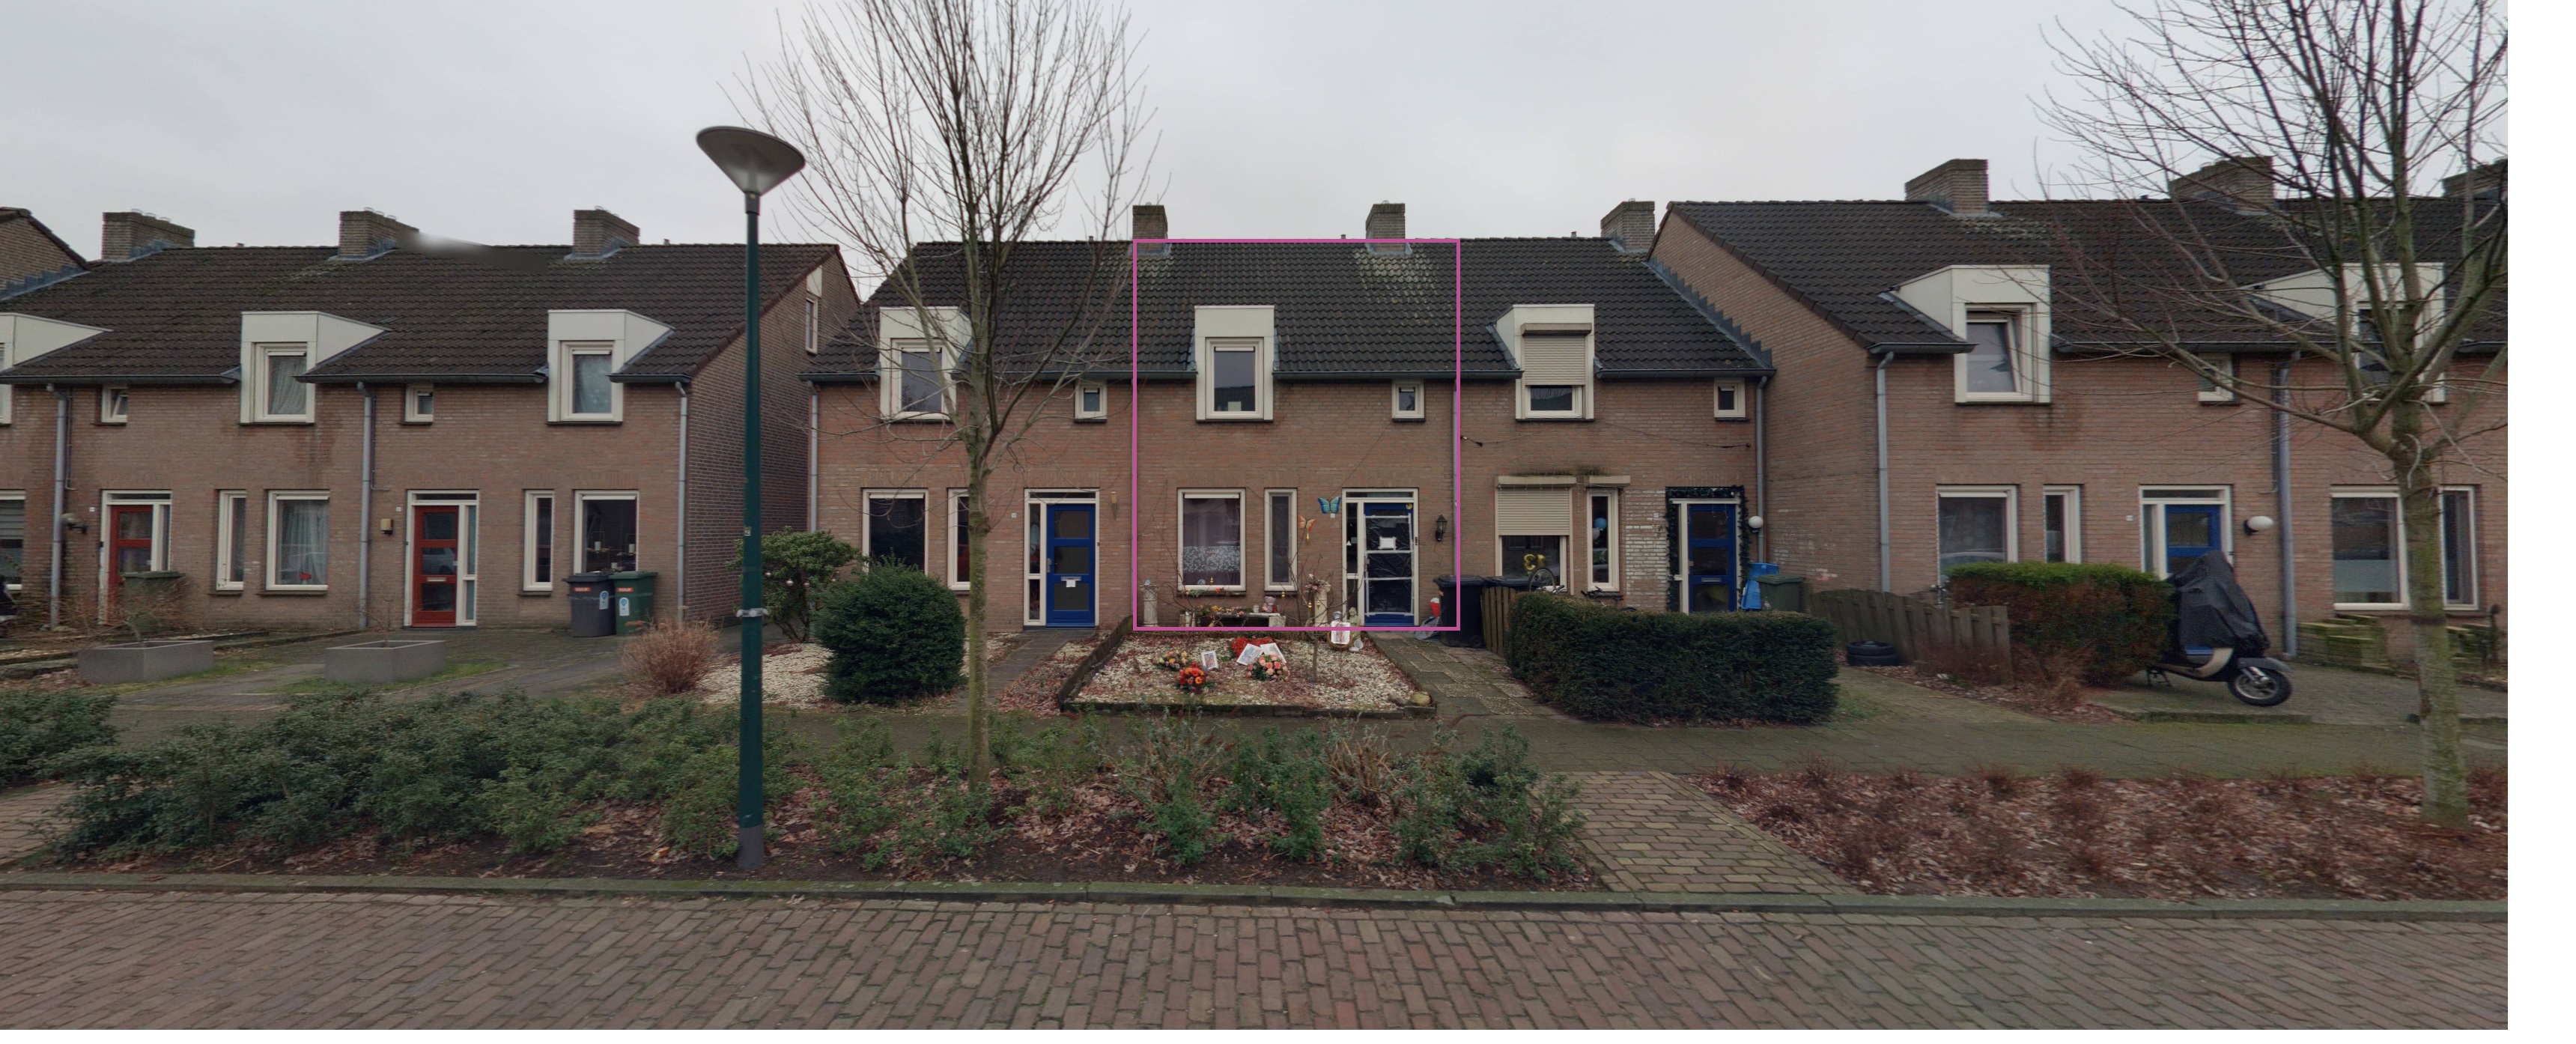 Wedstraat 15, 5388 KE Nistelrode, Nederland